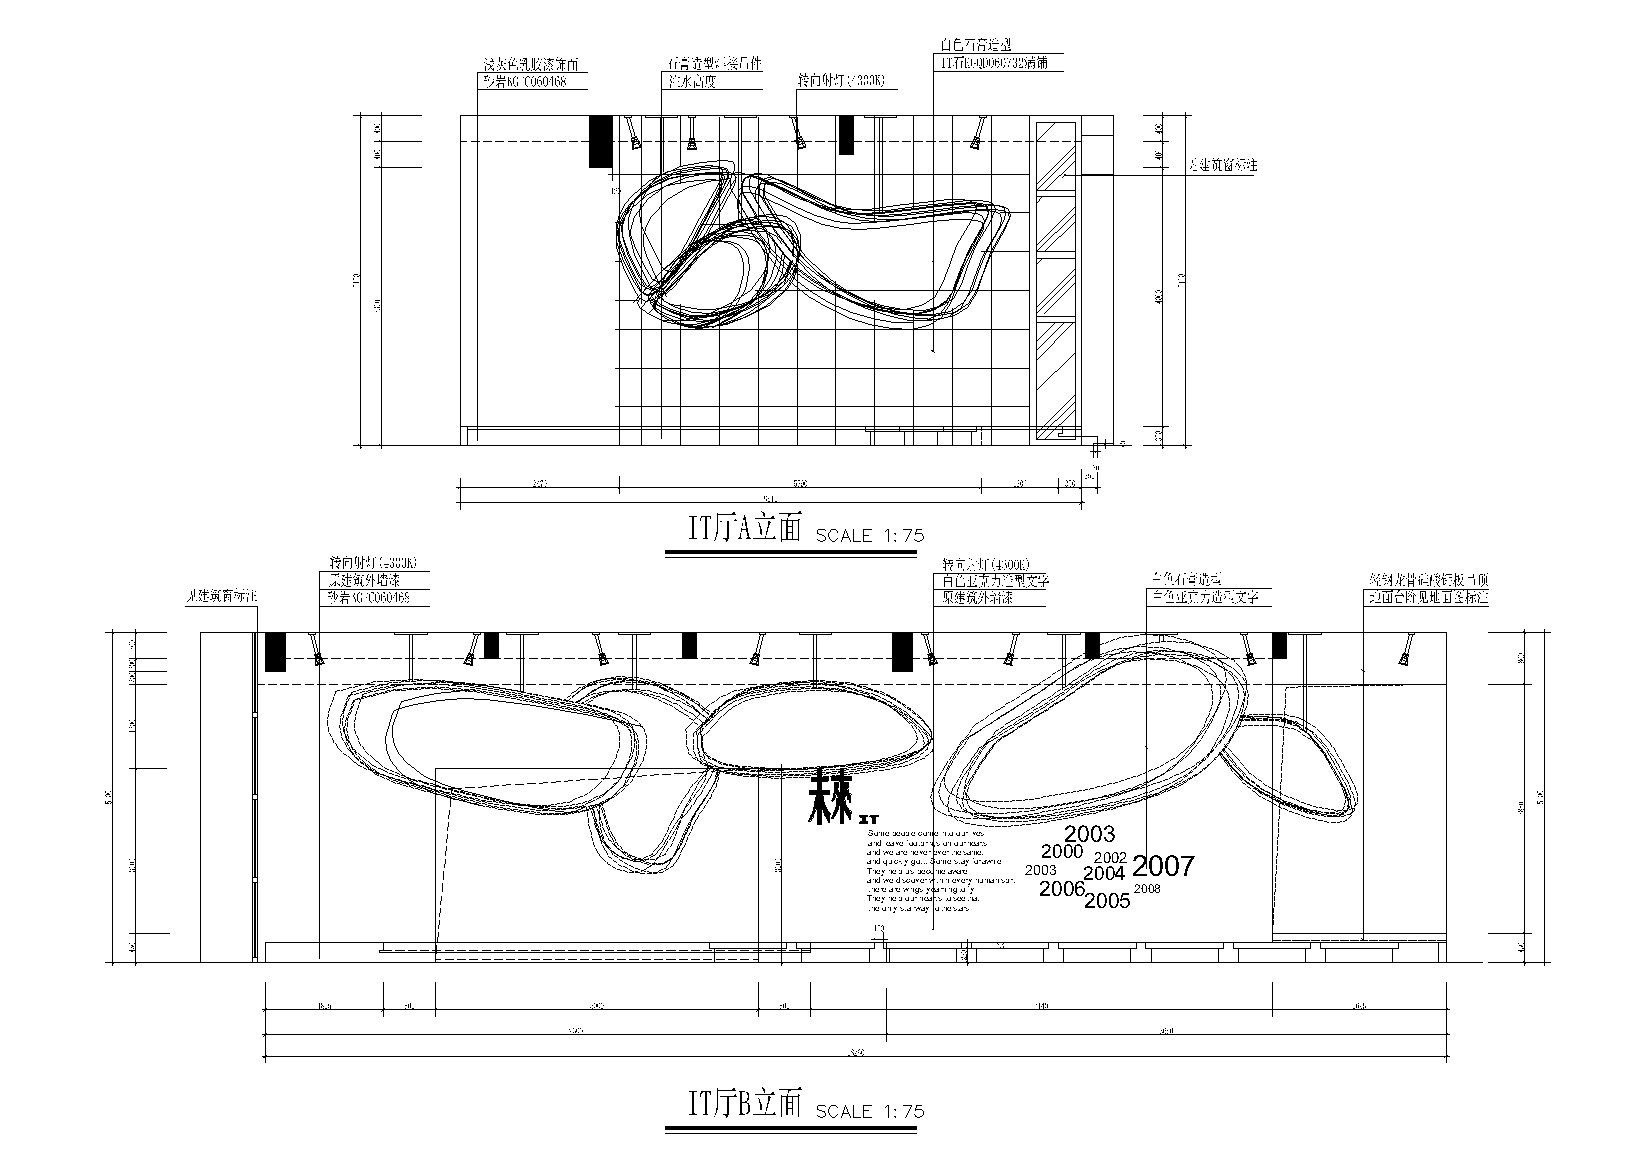 KITO某概念展厅艺术思想馆施工图+建筑外观-厅立面图10